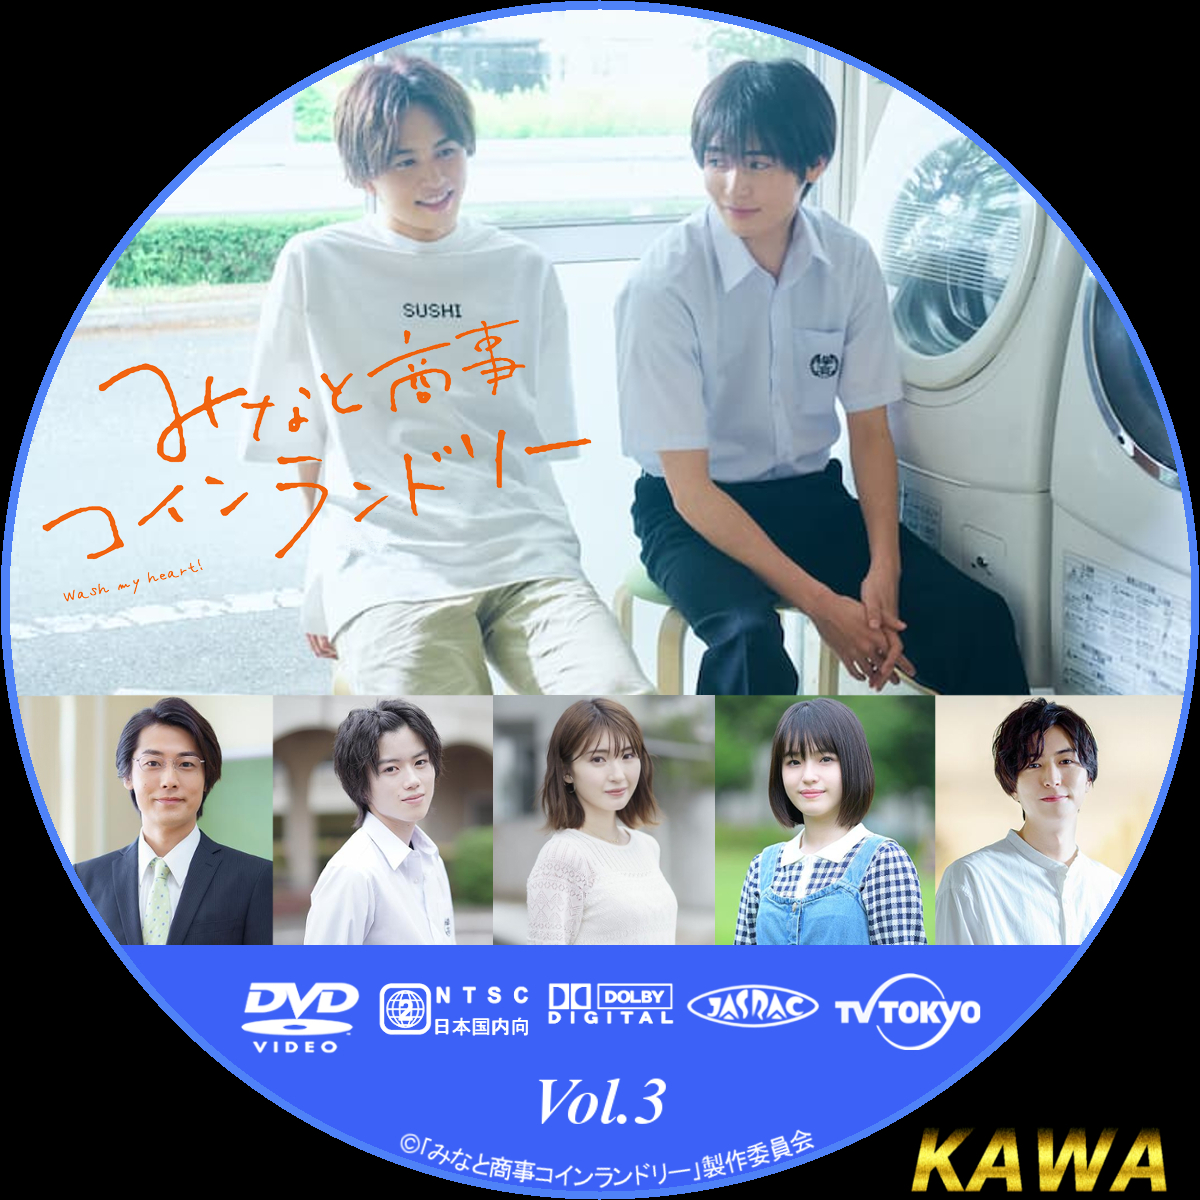 専門ショップ みなと商事コインランドリー BluRay DVD asakusa.sub.jp